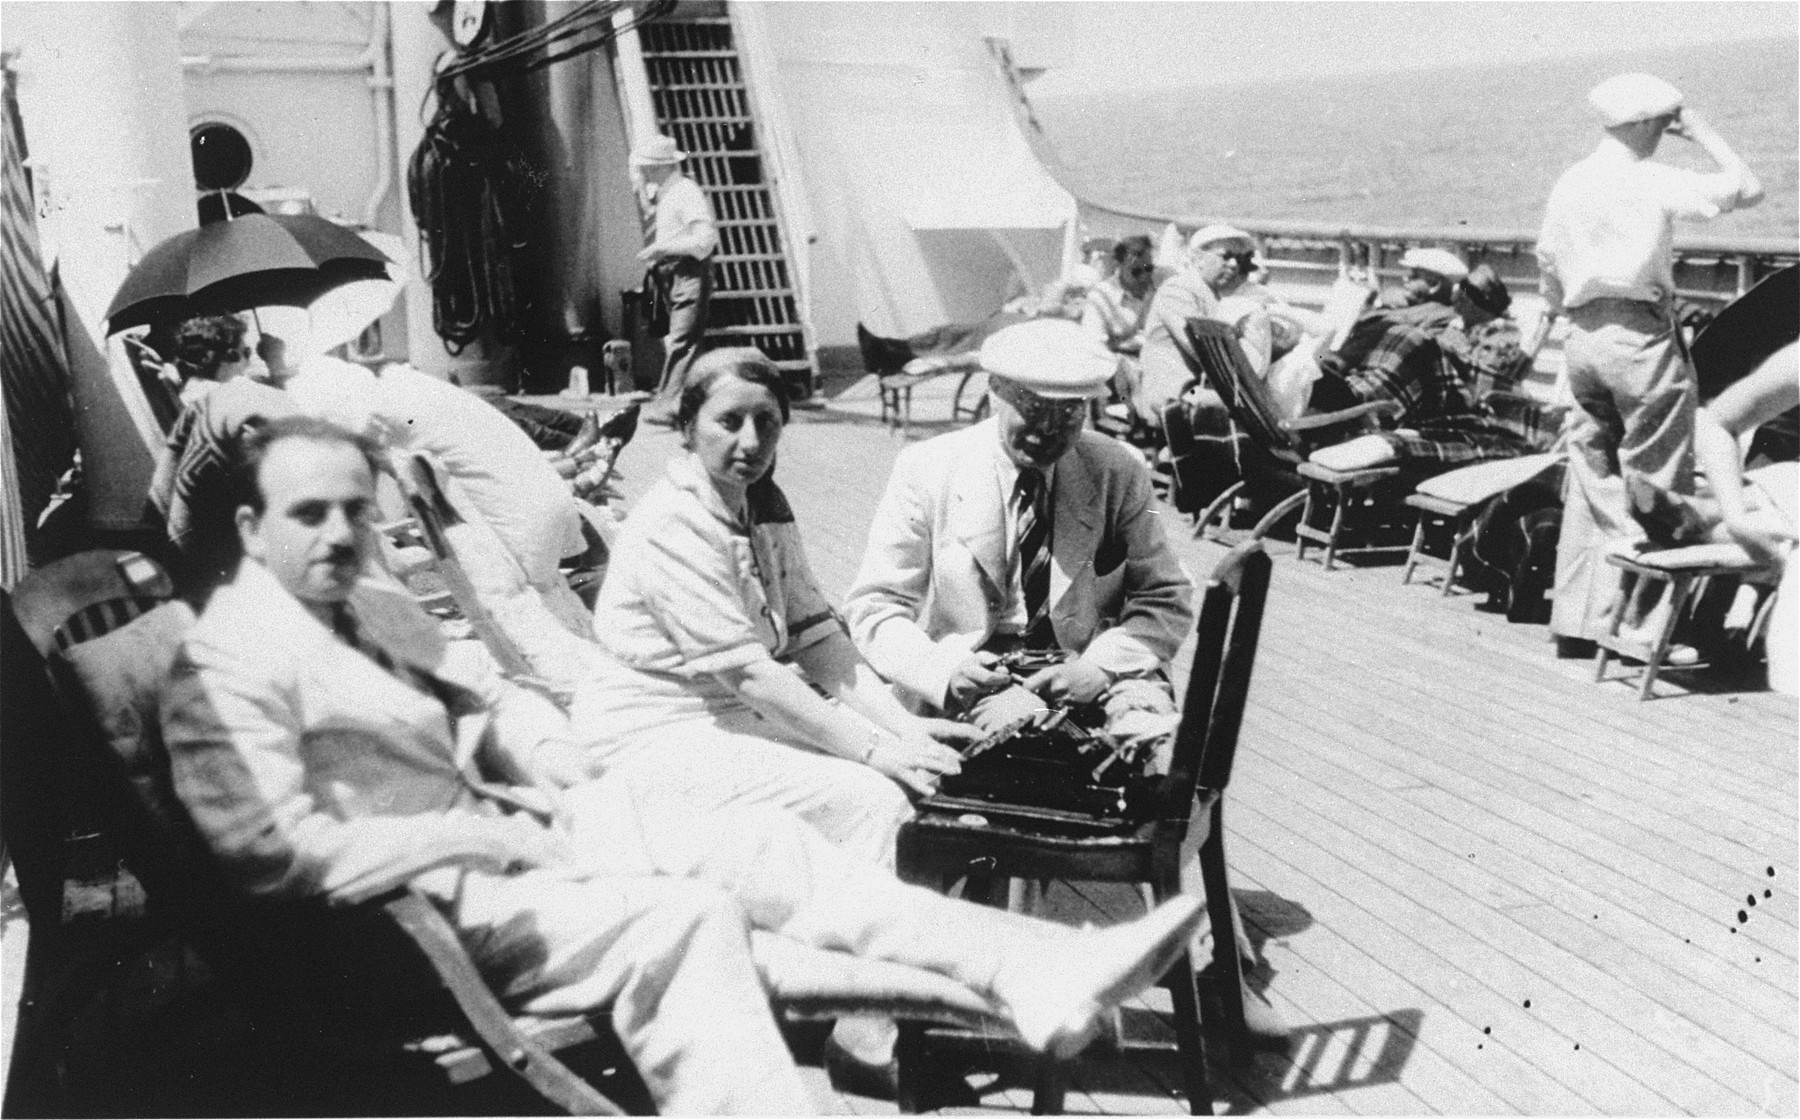 Båtreisa frå Hamburg til Havanna tok 14 dagar. St. Louis var eit skip som gjekk i passasjertrafikk mellom Tyskland og USA, men blei også brukt som charterbåt.